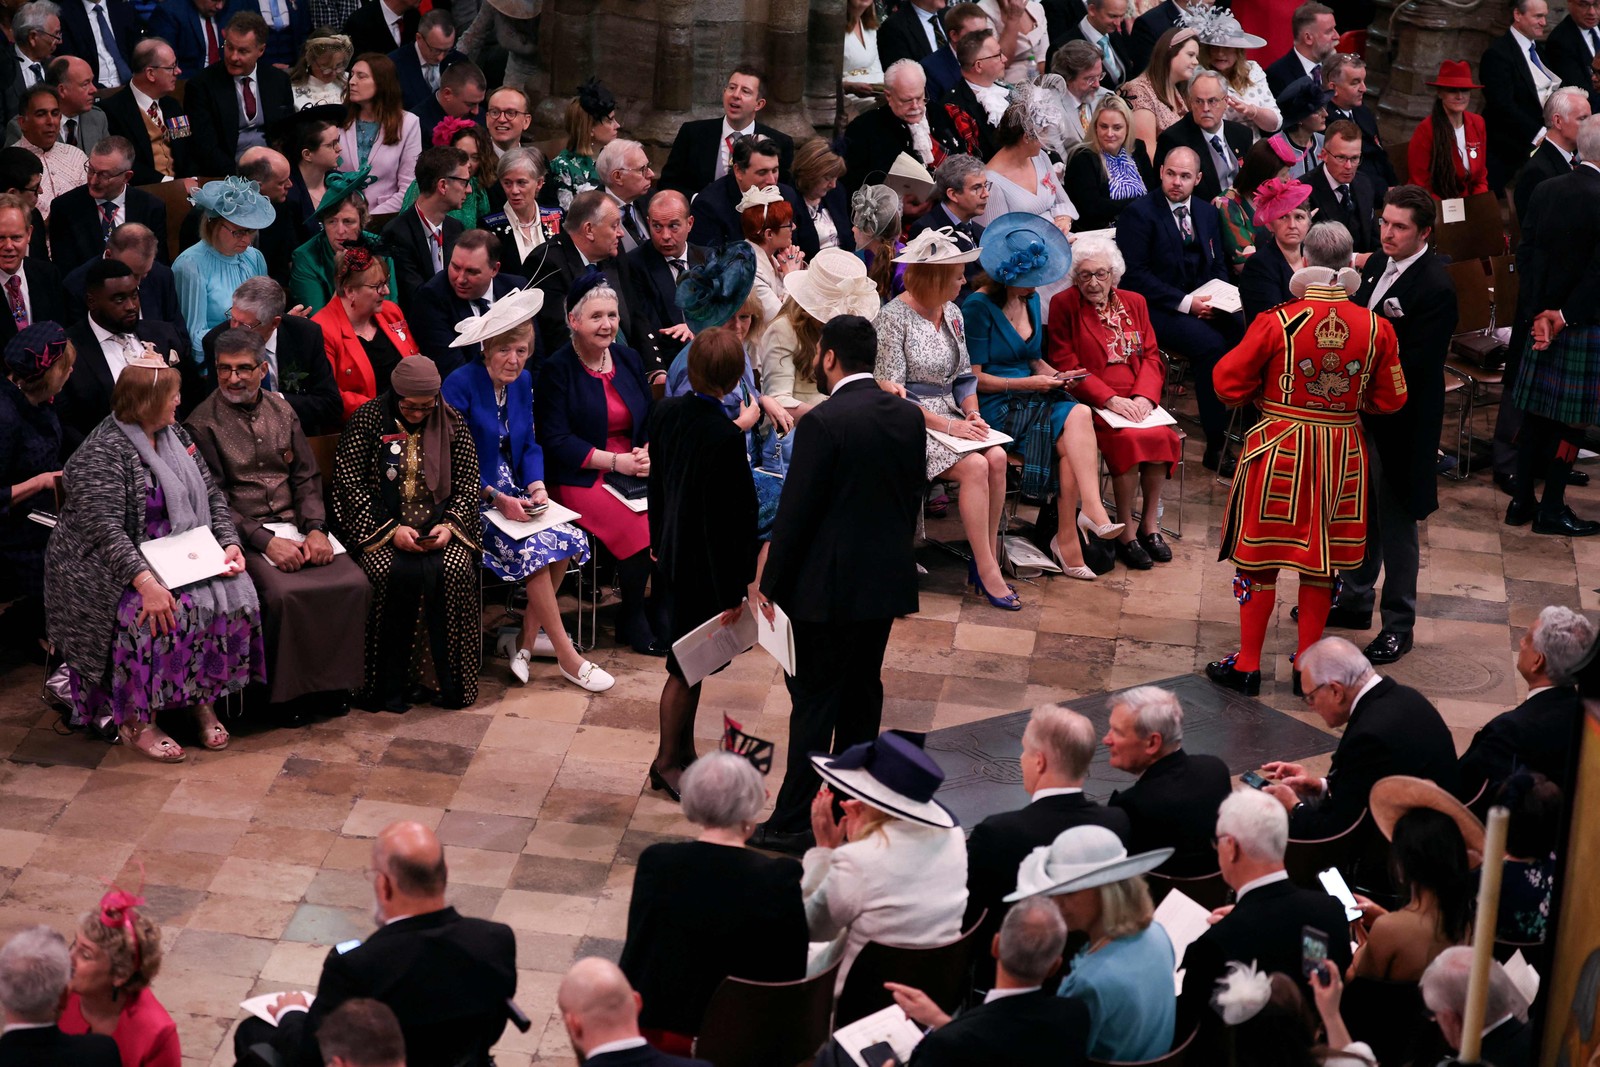 Cerca de 2.300 convidados estarão na imponente Abadia de Westminster para a cerimônia, incluindo figuras e líderes internacionais — Foto: PHIL NOBLE / POOL / AFP